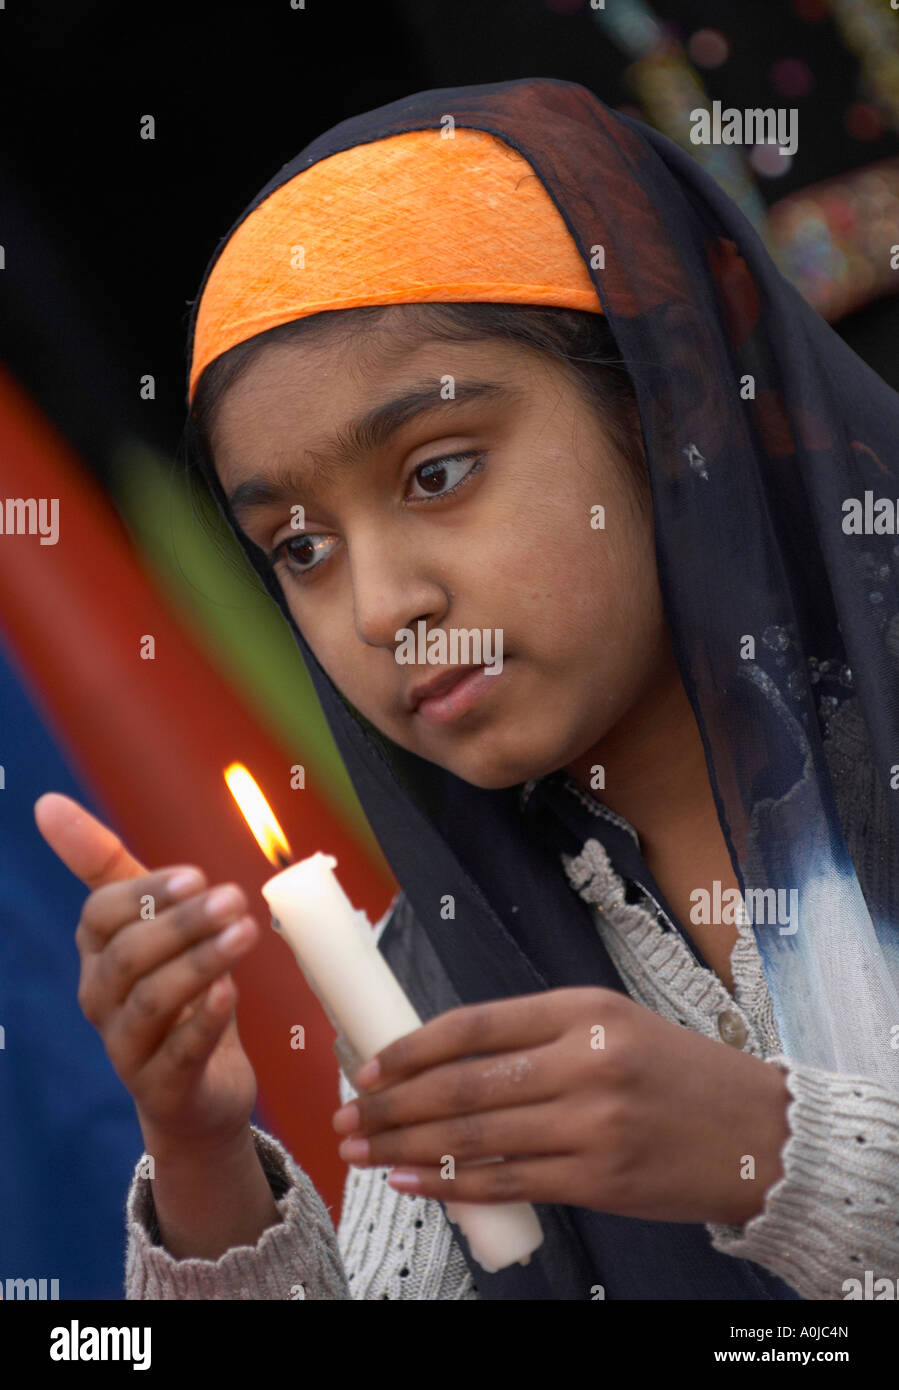 Sikh Chica sujetando una vela Foto de stock